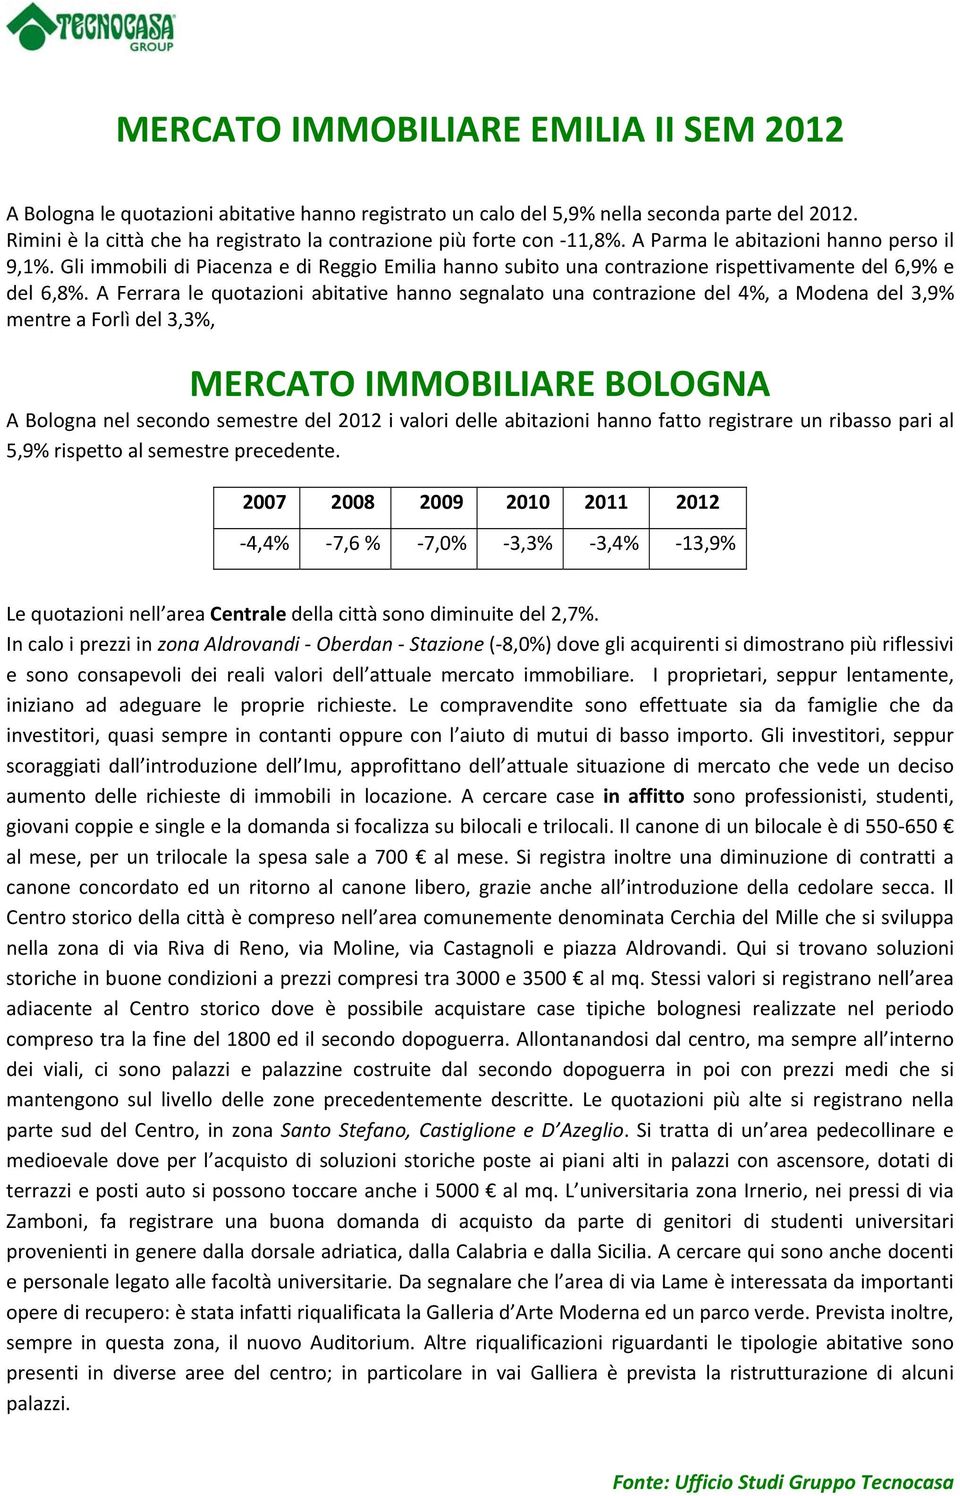 Gli immobili di Piacenza e di Reggio Emilia hanno subito una contrazione rispettivamente del 6,9% e del 6,8%.